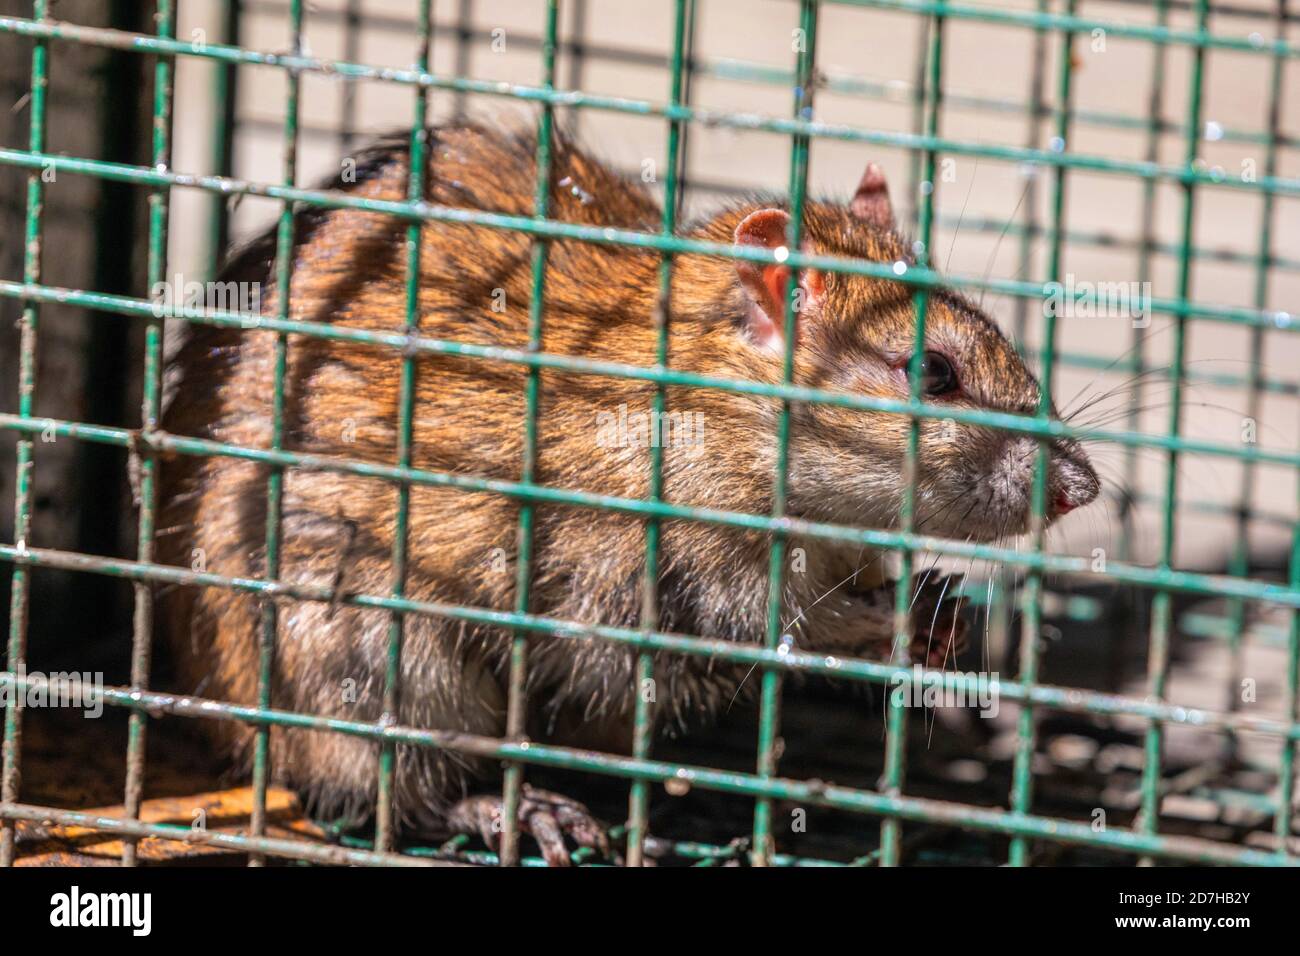 Rat brun, rat brun commun, rat norvégien, rat commun (Rattus norvegicus), pris dans un piège vivant, Allemagne, Bavière Banque D'Images